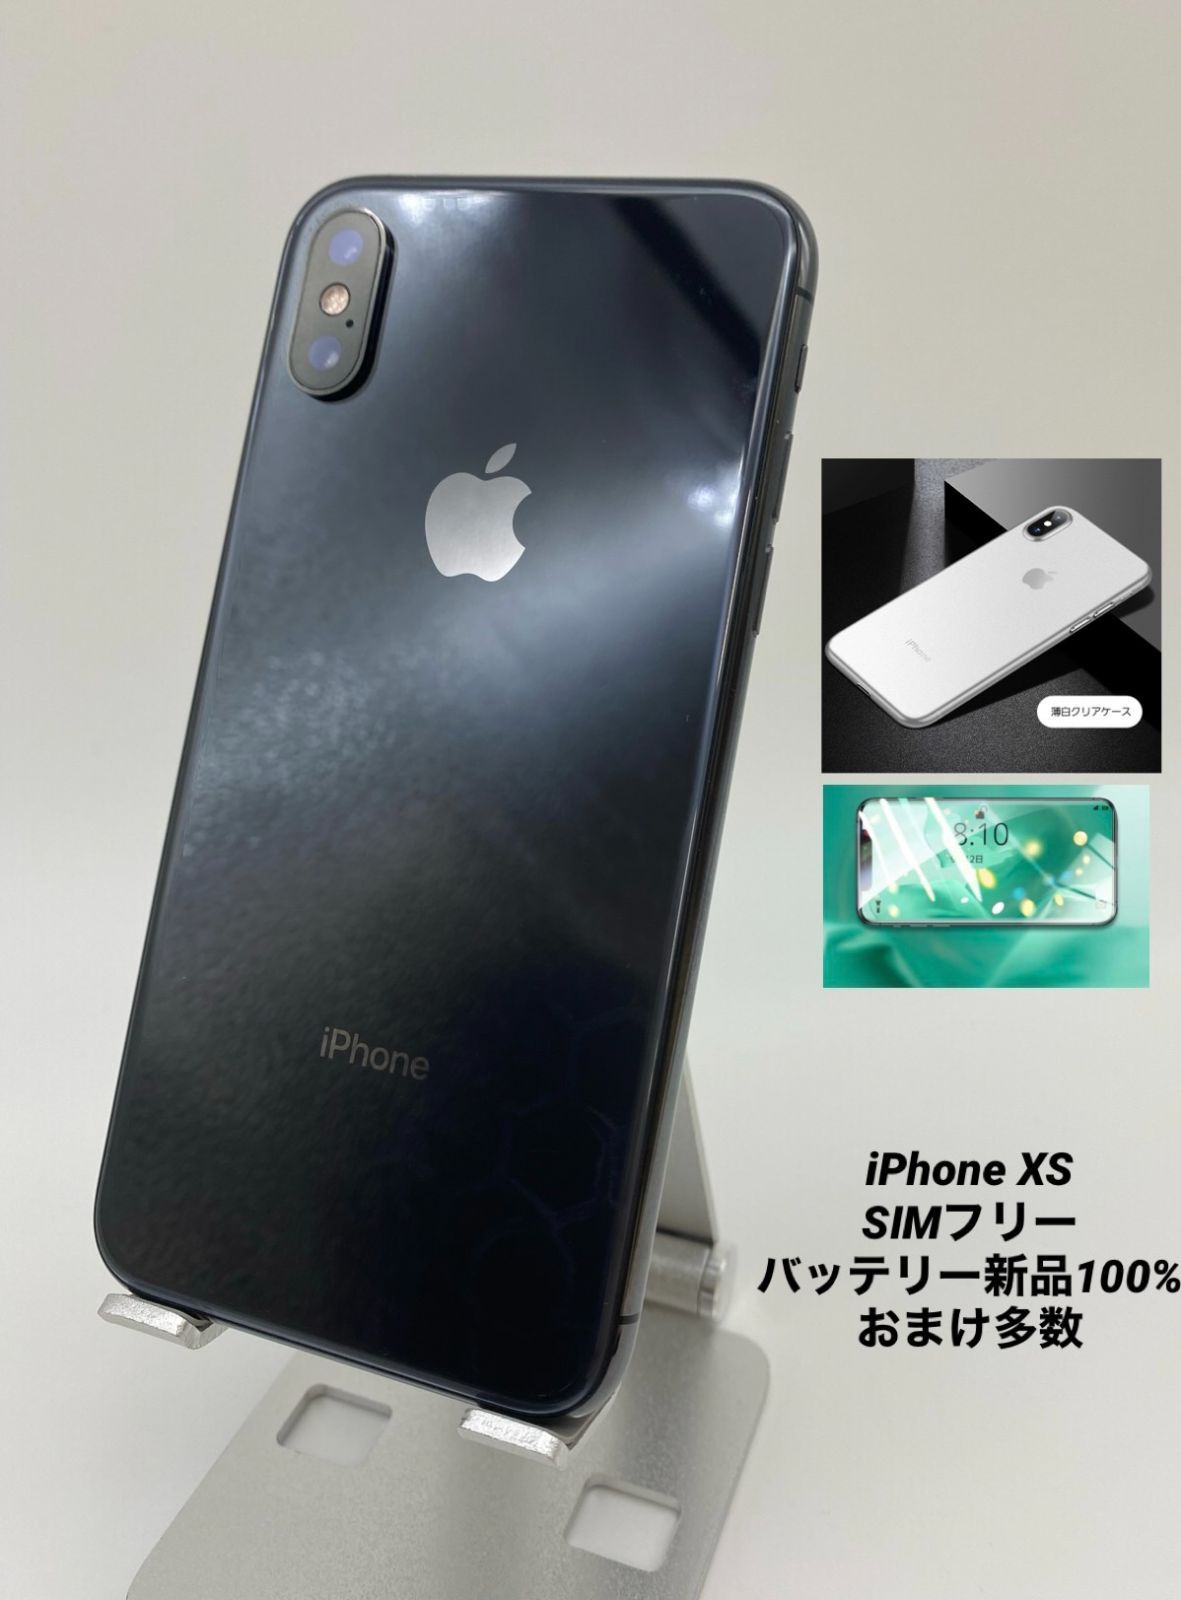 iPhoneXS 256G スペースグレイ/新品BT100%/シムフリー 015 tic-guinee.net